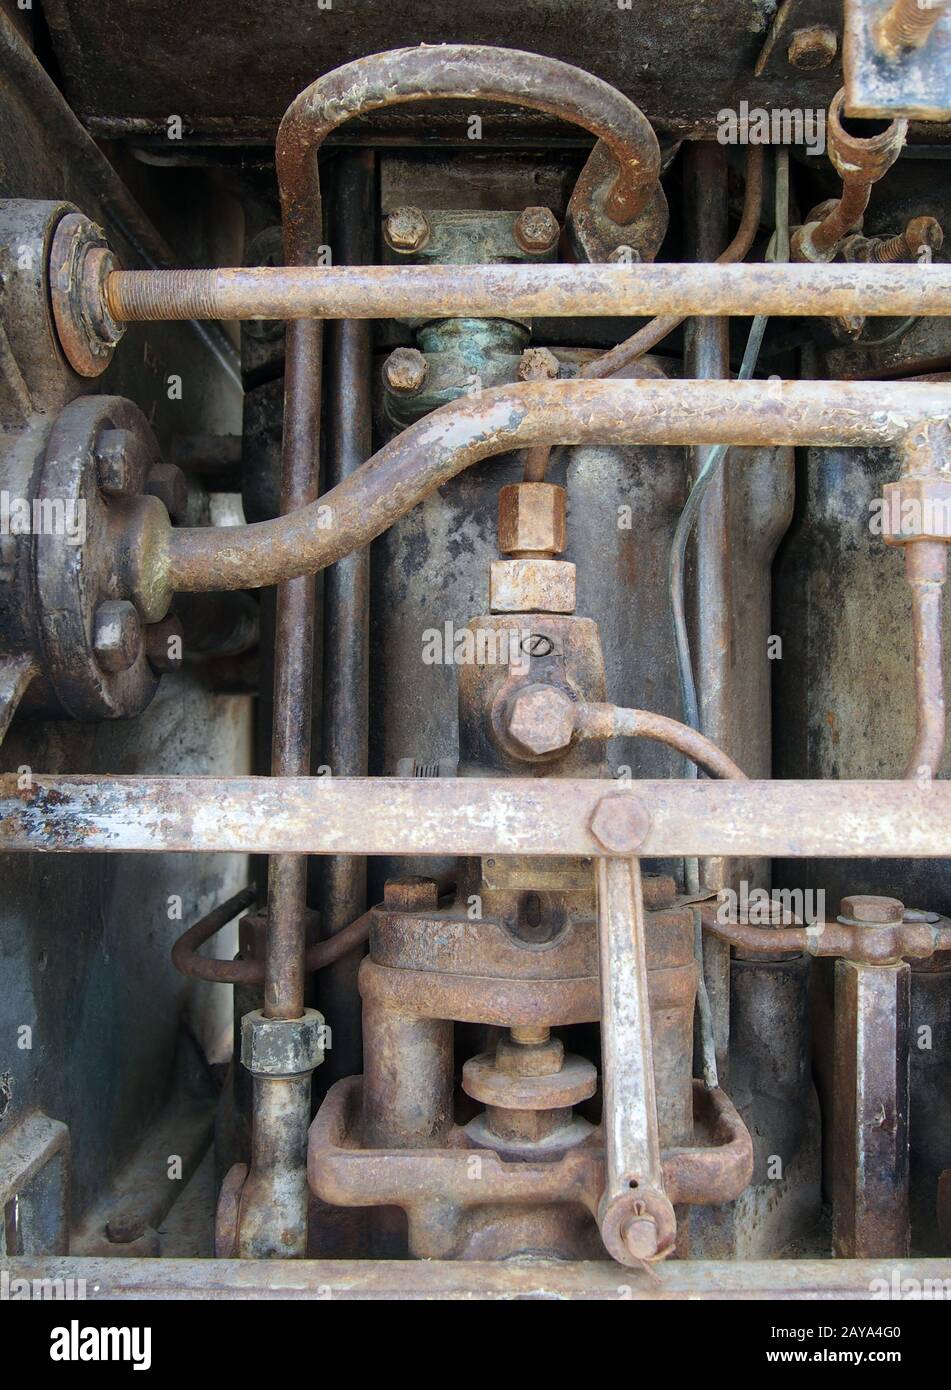 primo piano di un grande vecchio motore diesel marino abbandonato con tubi arrugginiti, cilindri e bulloni Foto Stock